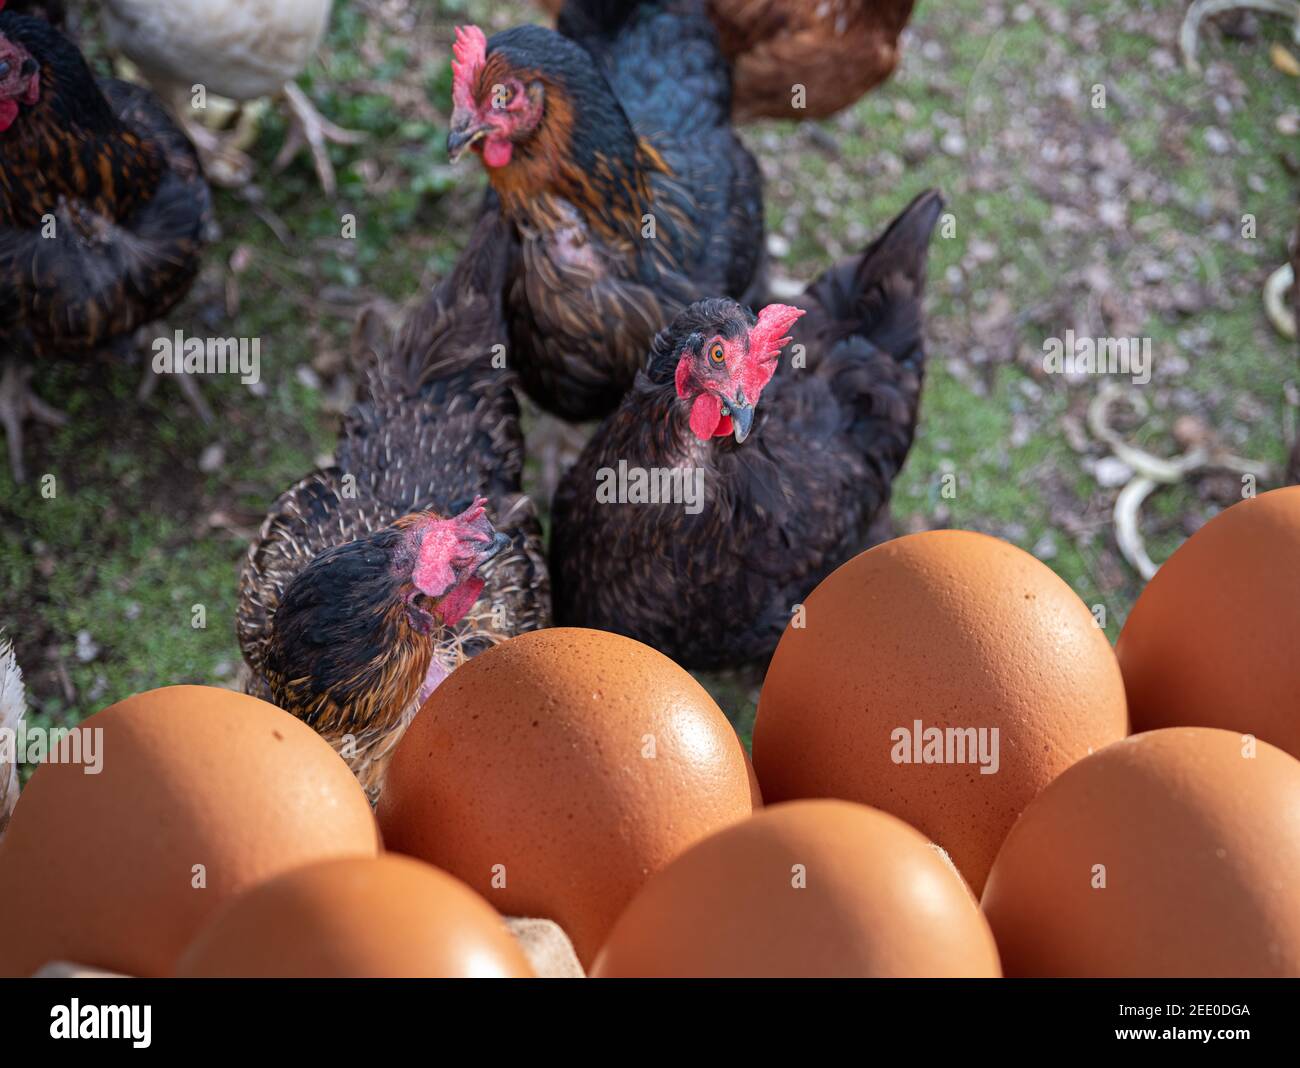 Poules sur la ferme avec des œufs bruns au premier plan prêt à vendre Banque D'Images